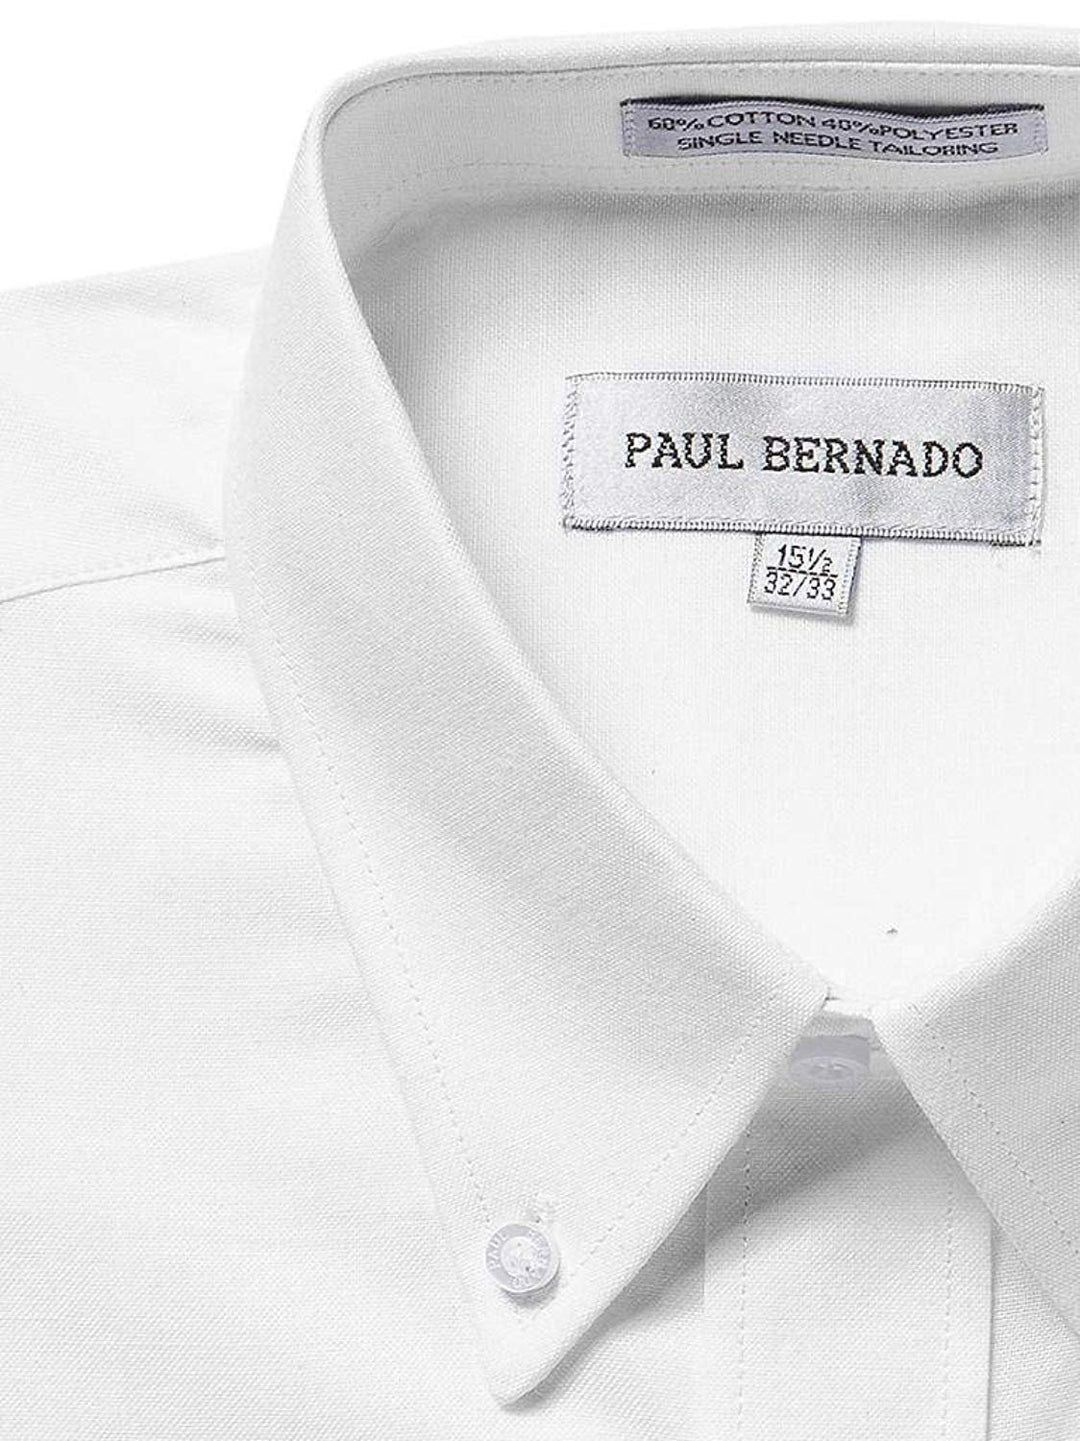 Paul Bernado Men's Long Sleeve Button-Down Oxford Shirt - CLEARANCE - FINAL SALE